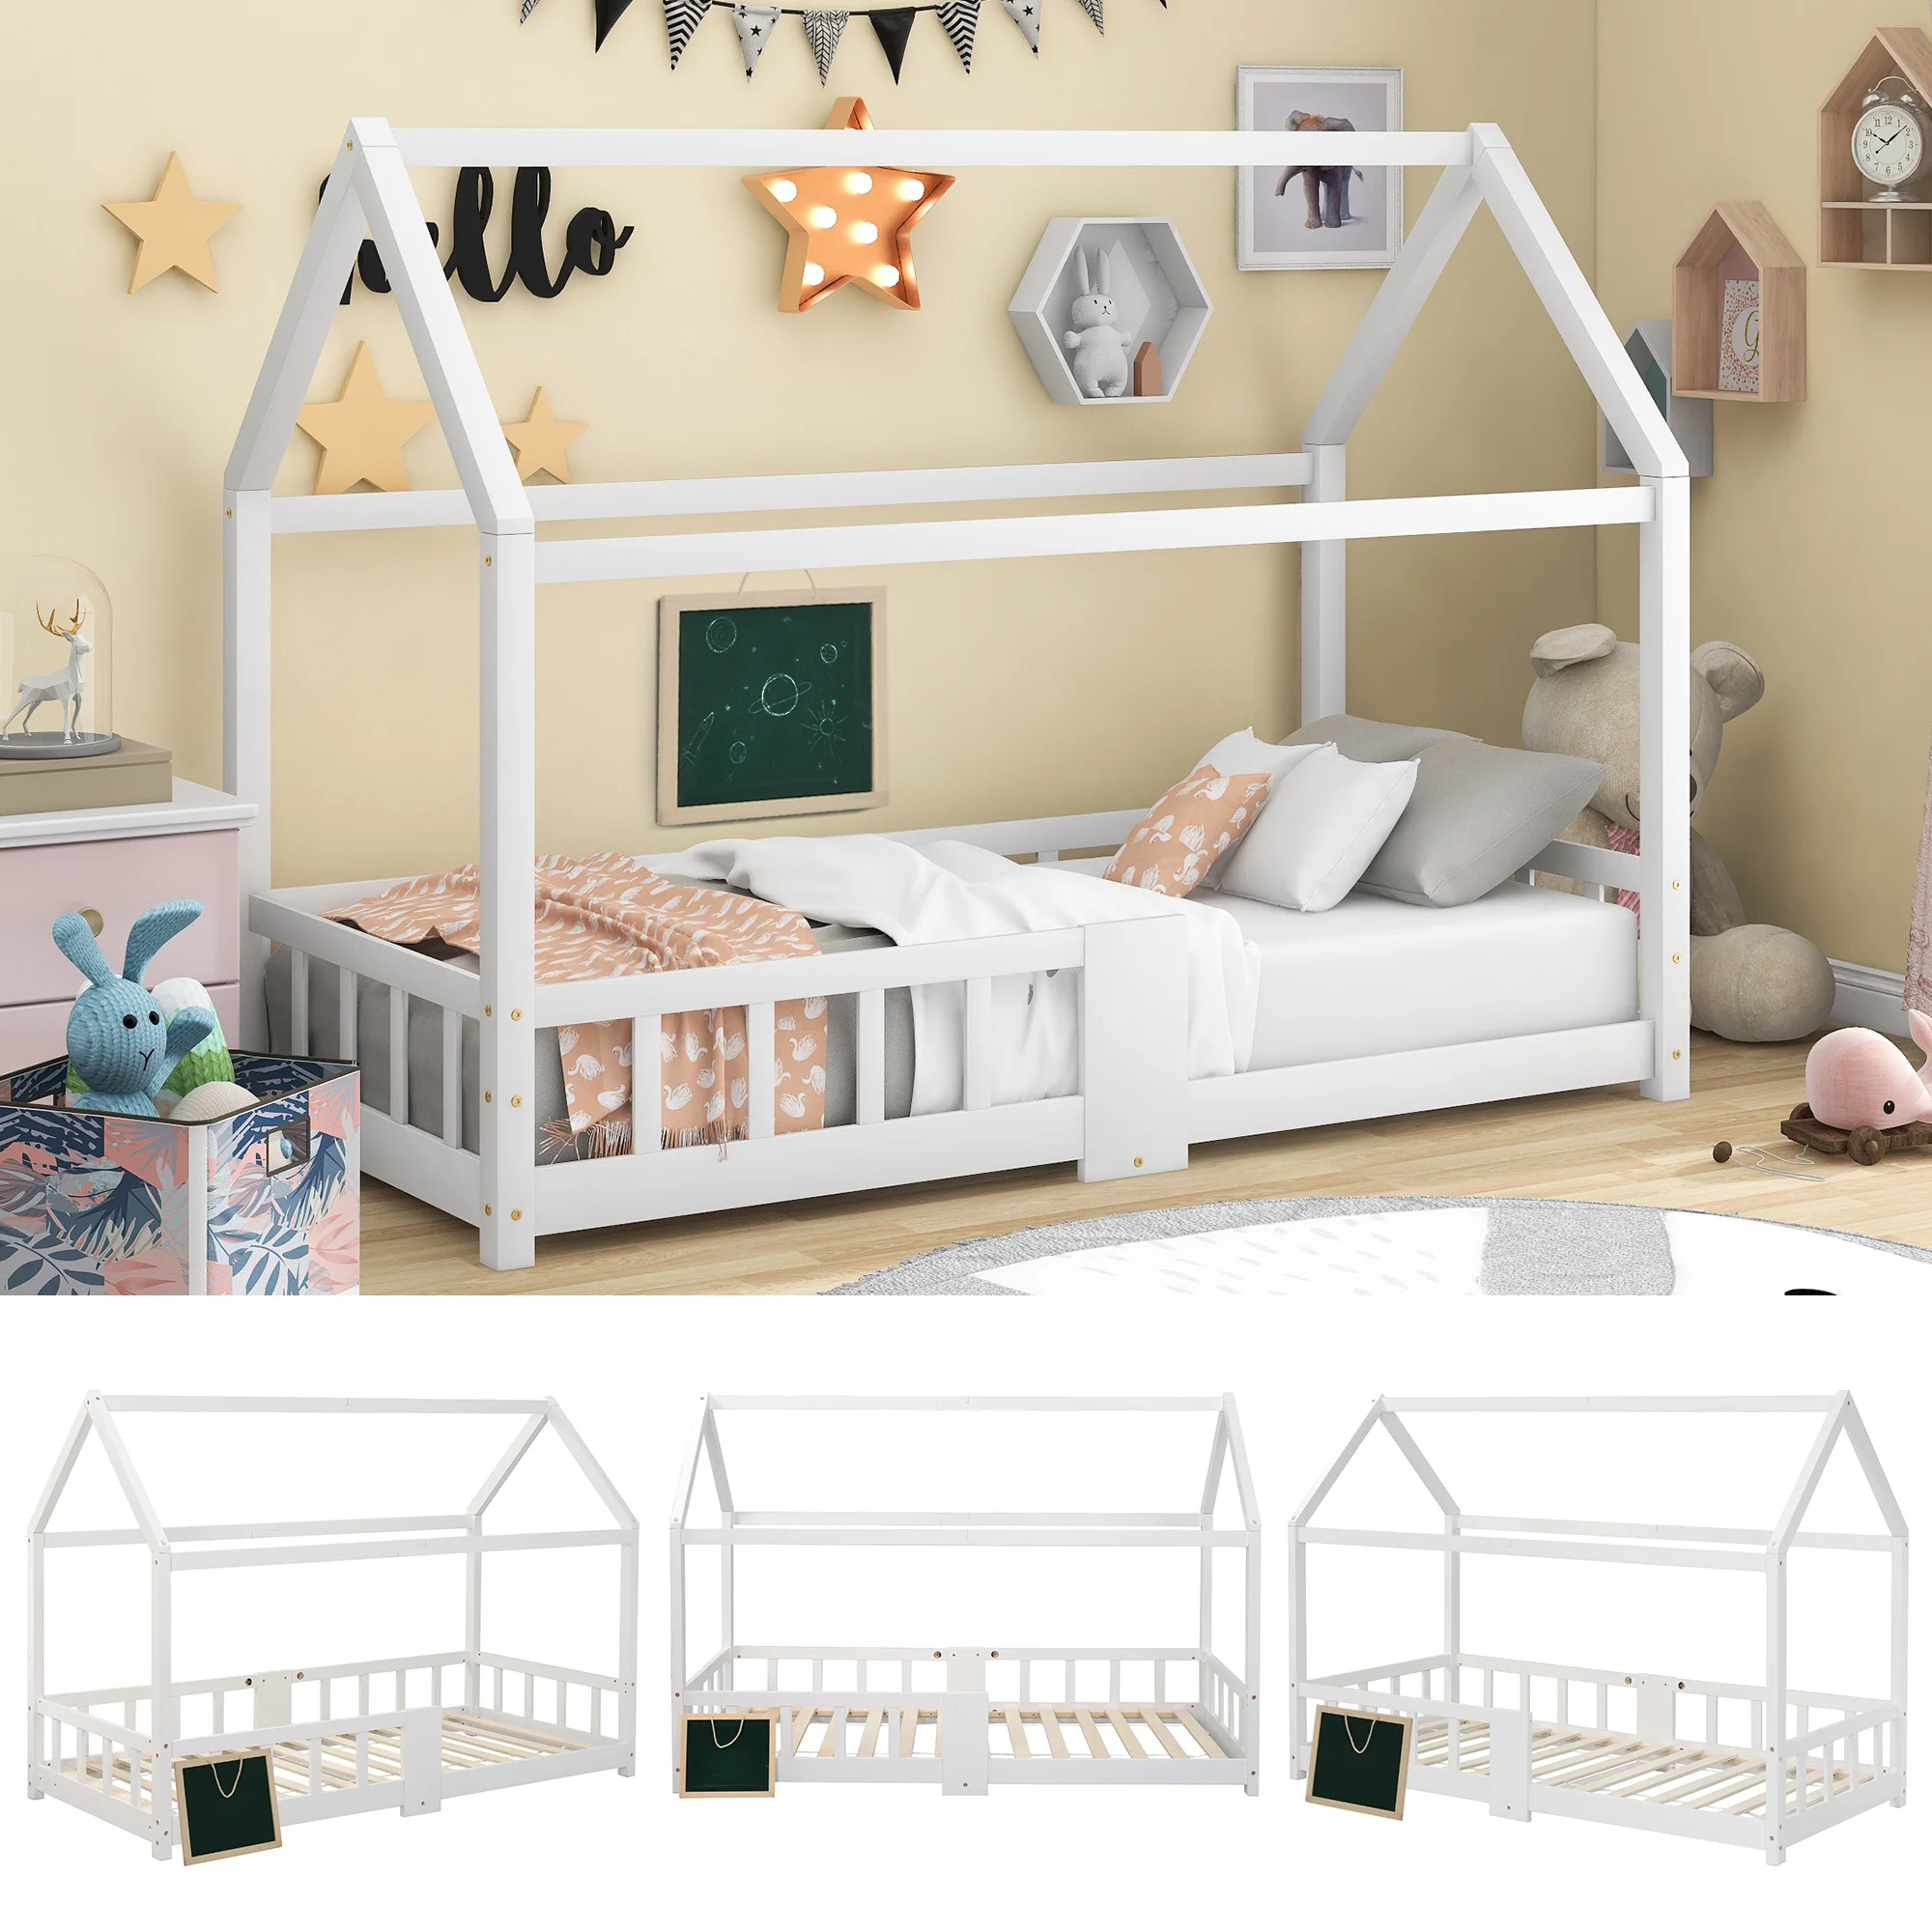 Кровать 90x200см, деревянная кровать для детской комнаты доска с реечными рамами защита от падения,изготовлена из сосны,белая (без матраса)